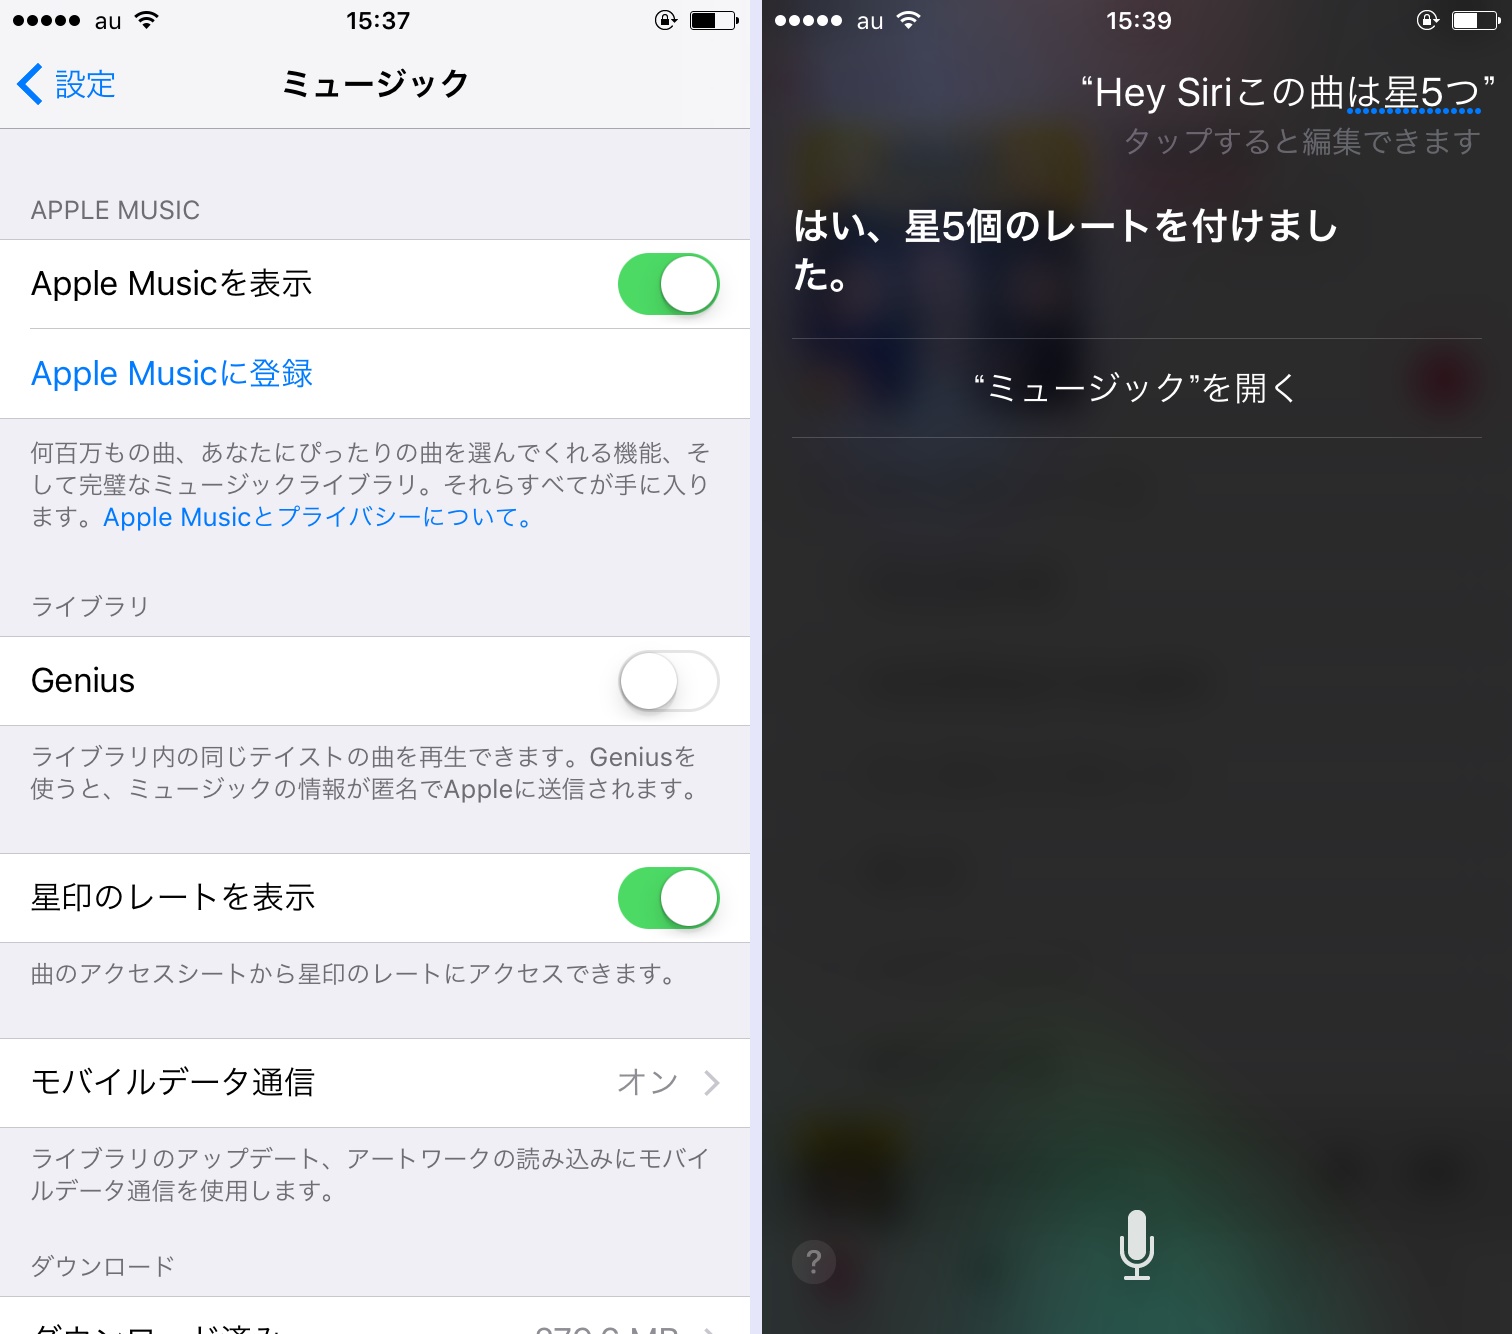 Iphone内の膨大な楽曲をかしこく整理 星で評価すれば好みの楽曲がわかる Iphone Tips Engadget 日本版